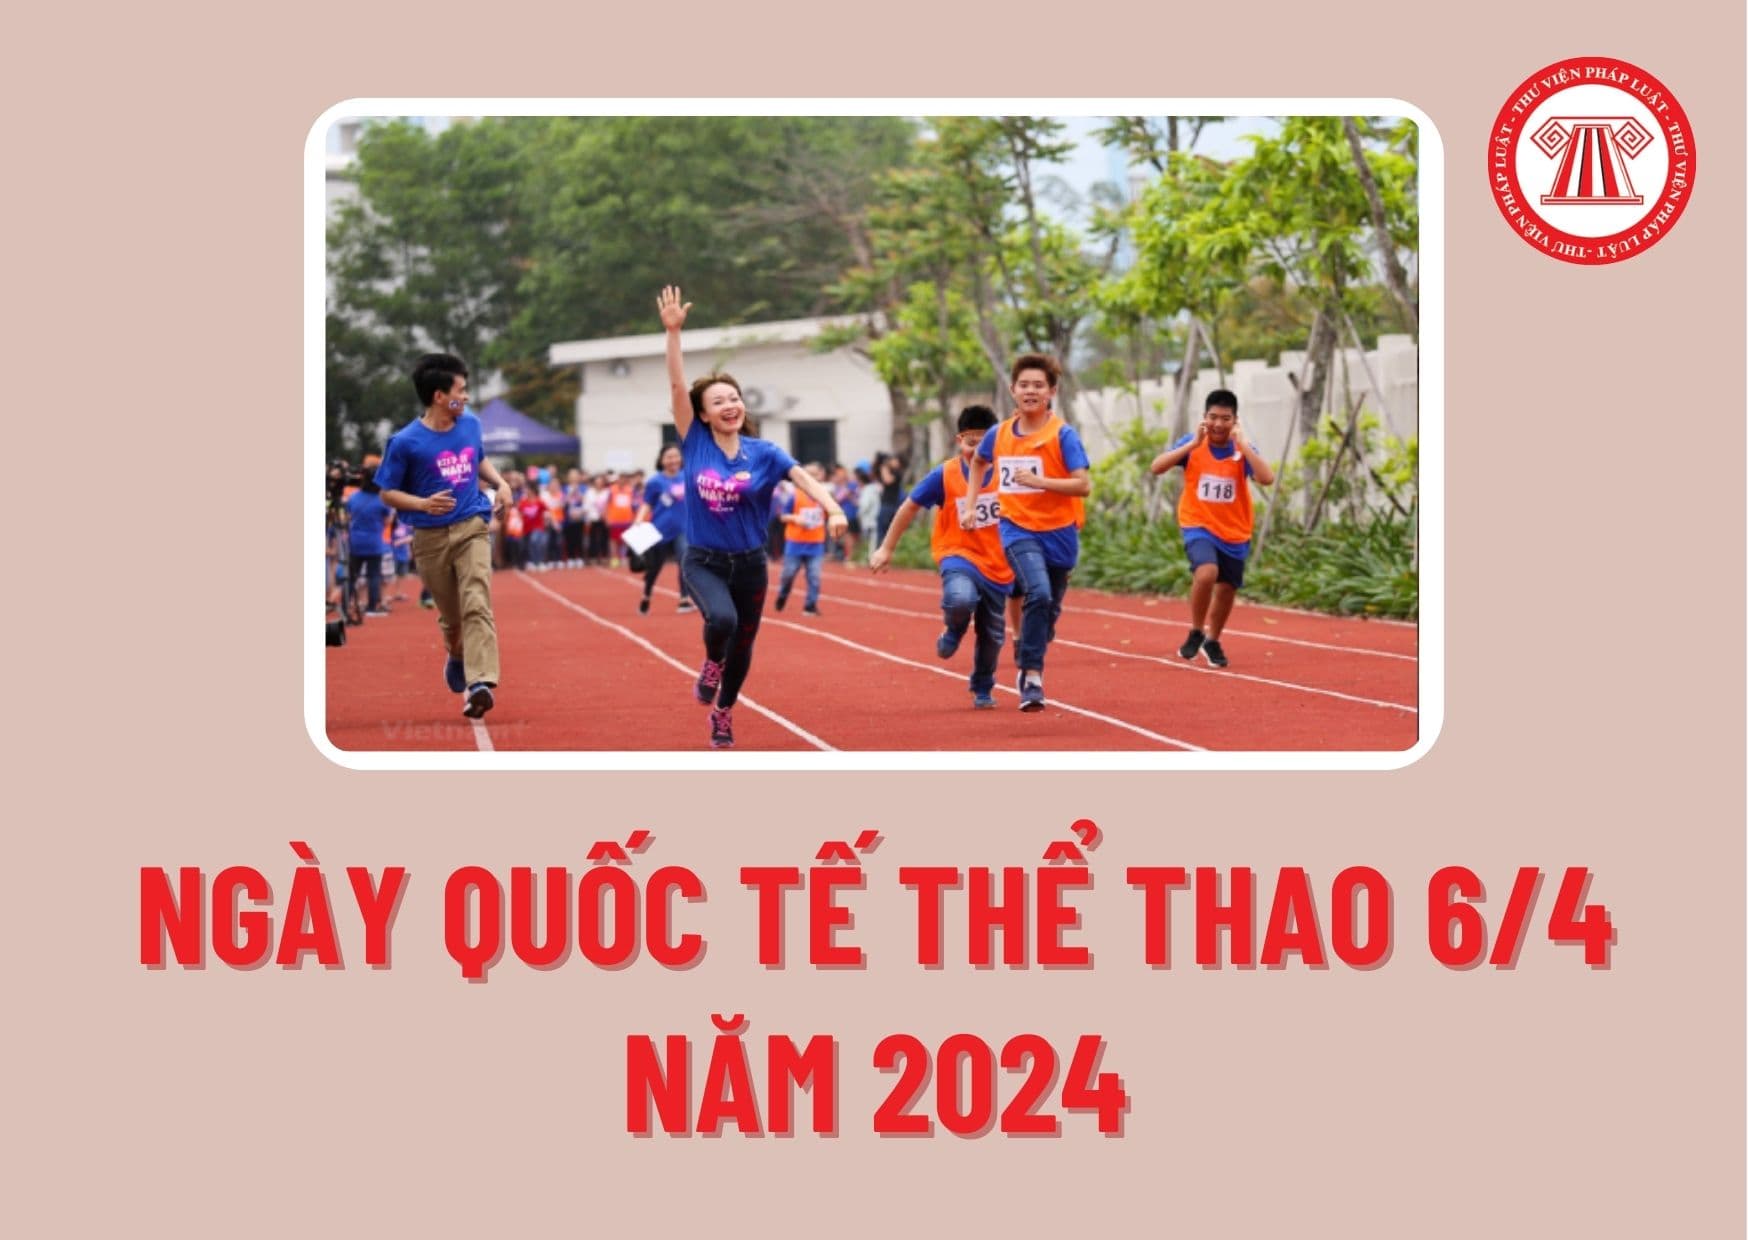 Ngày quốc tế thể thao 6/4 năm 2024 vì một thế giới phát triển và hòa bình có phải ngày lễ lớn ở Việt Nam không?